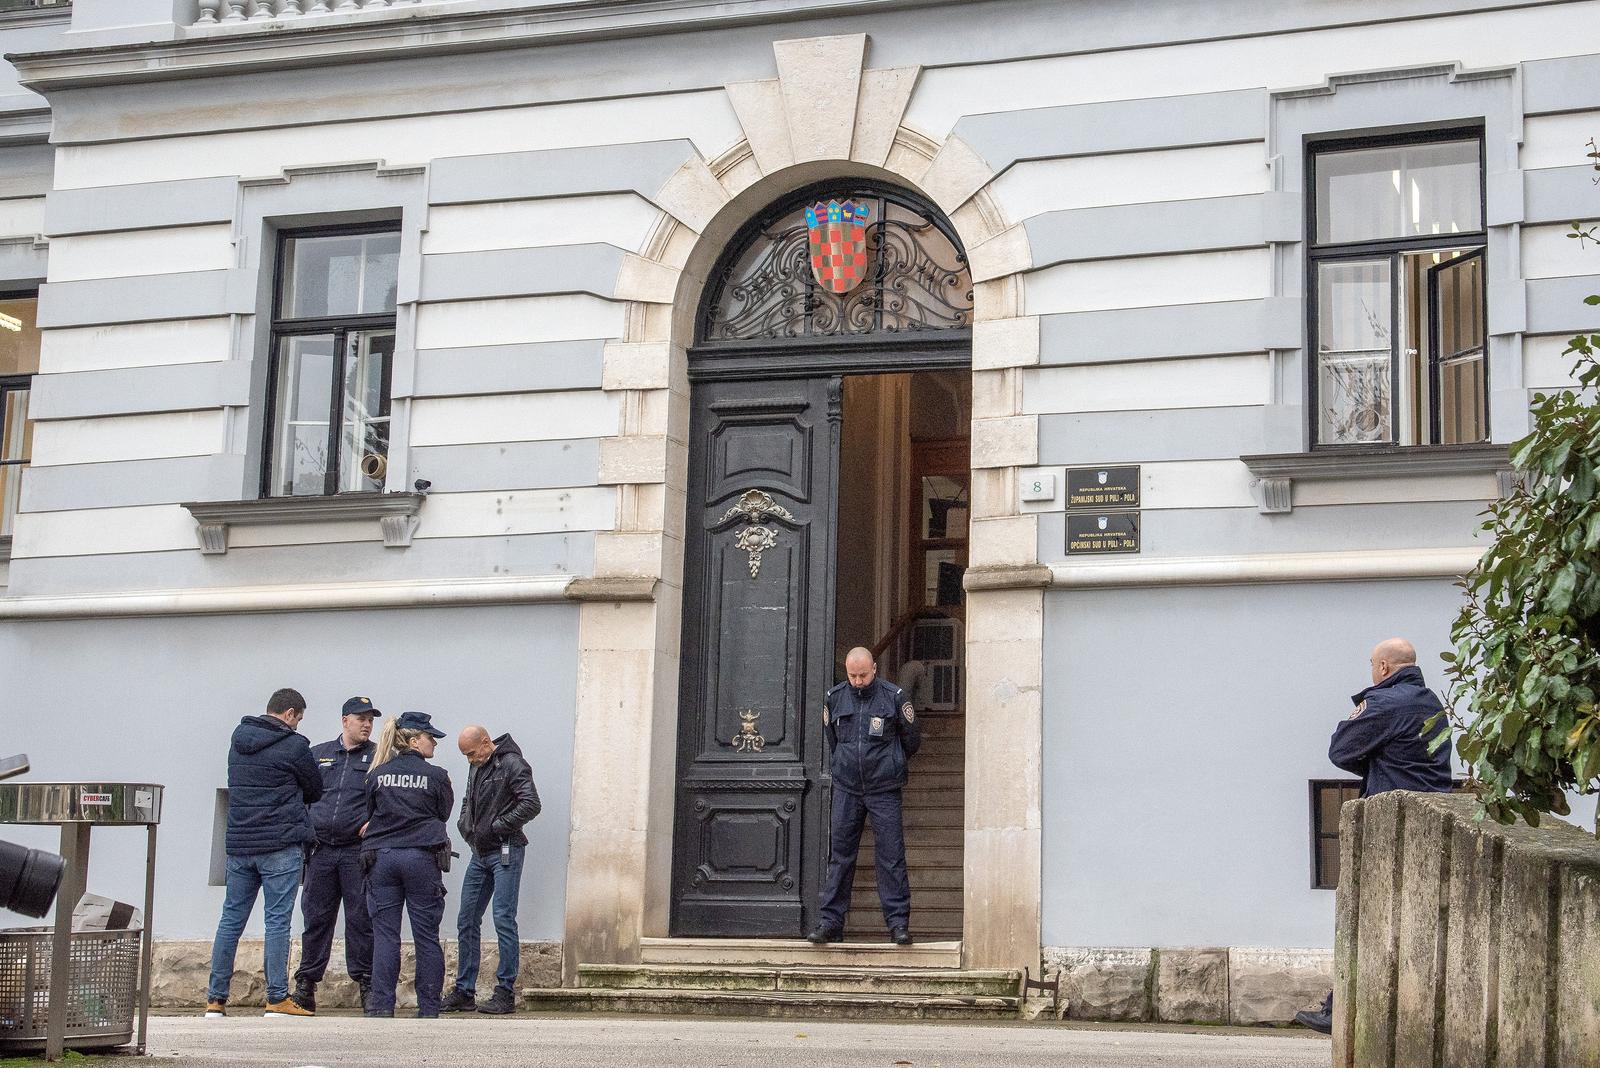 05.12.2022., Pula - Nakon dojave o bombi, sud u Puli je evakuiran a ispred suda je policija. Photo: Srecko Niketic/PIXSELL